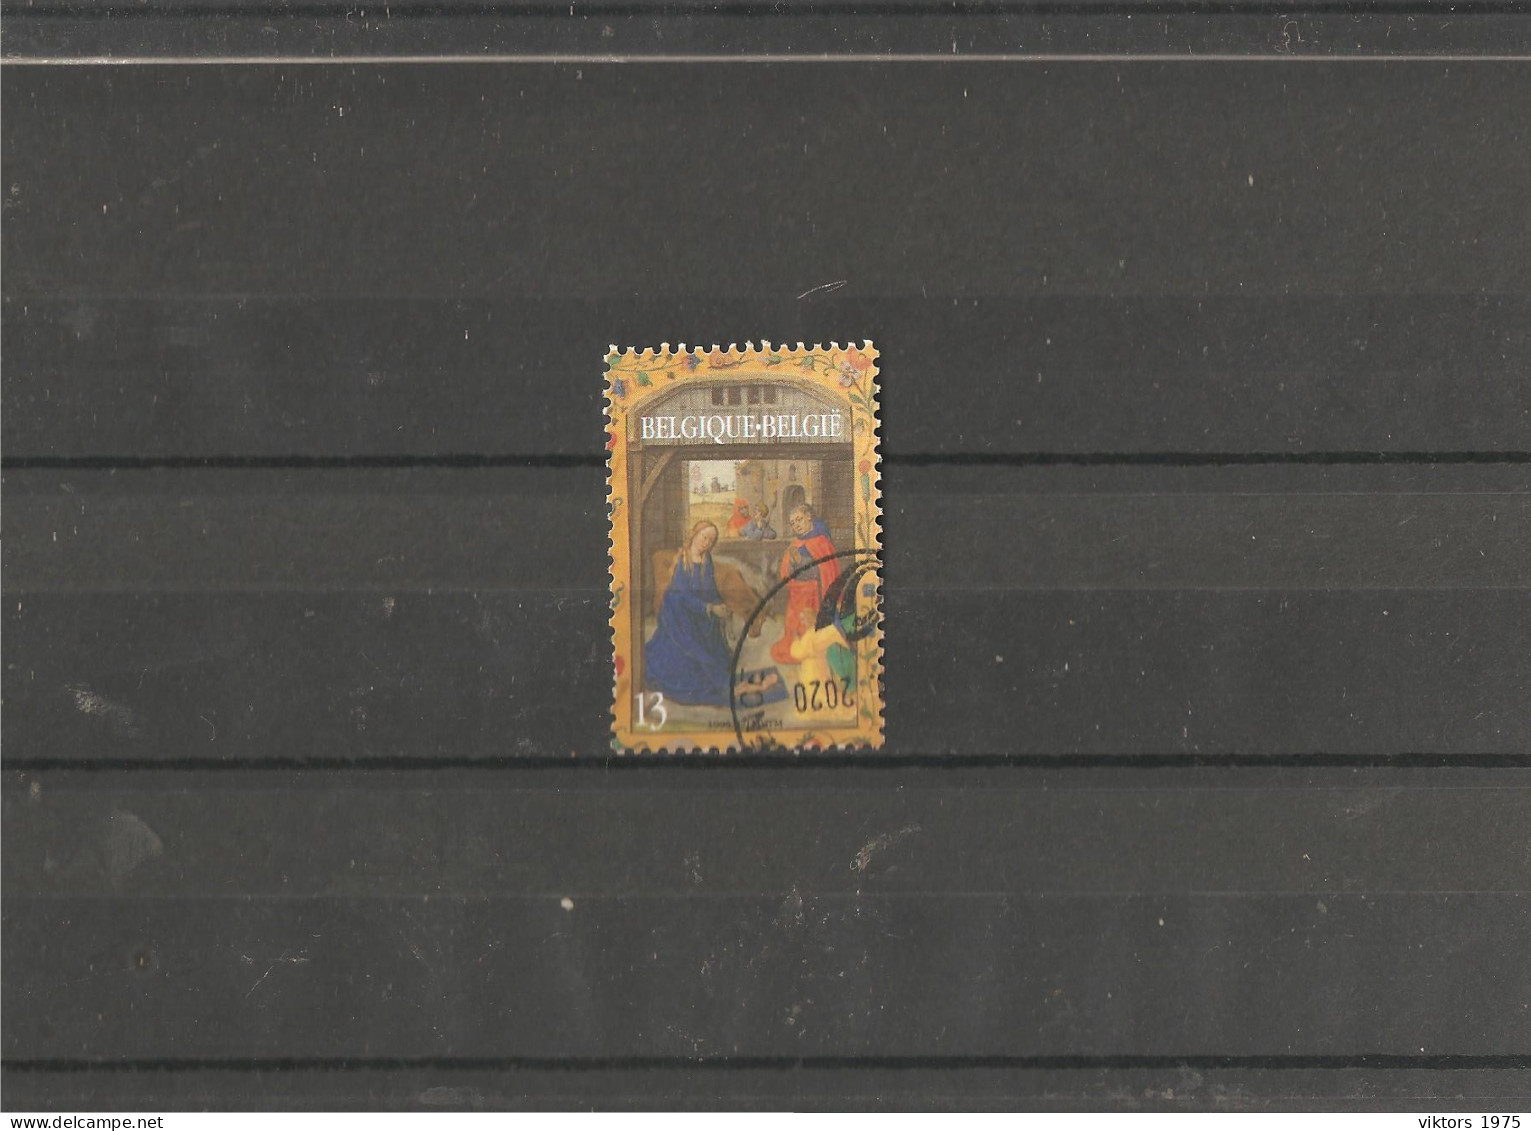 Used Stamp Nr.2674 In MICHEL Catalog - Usati